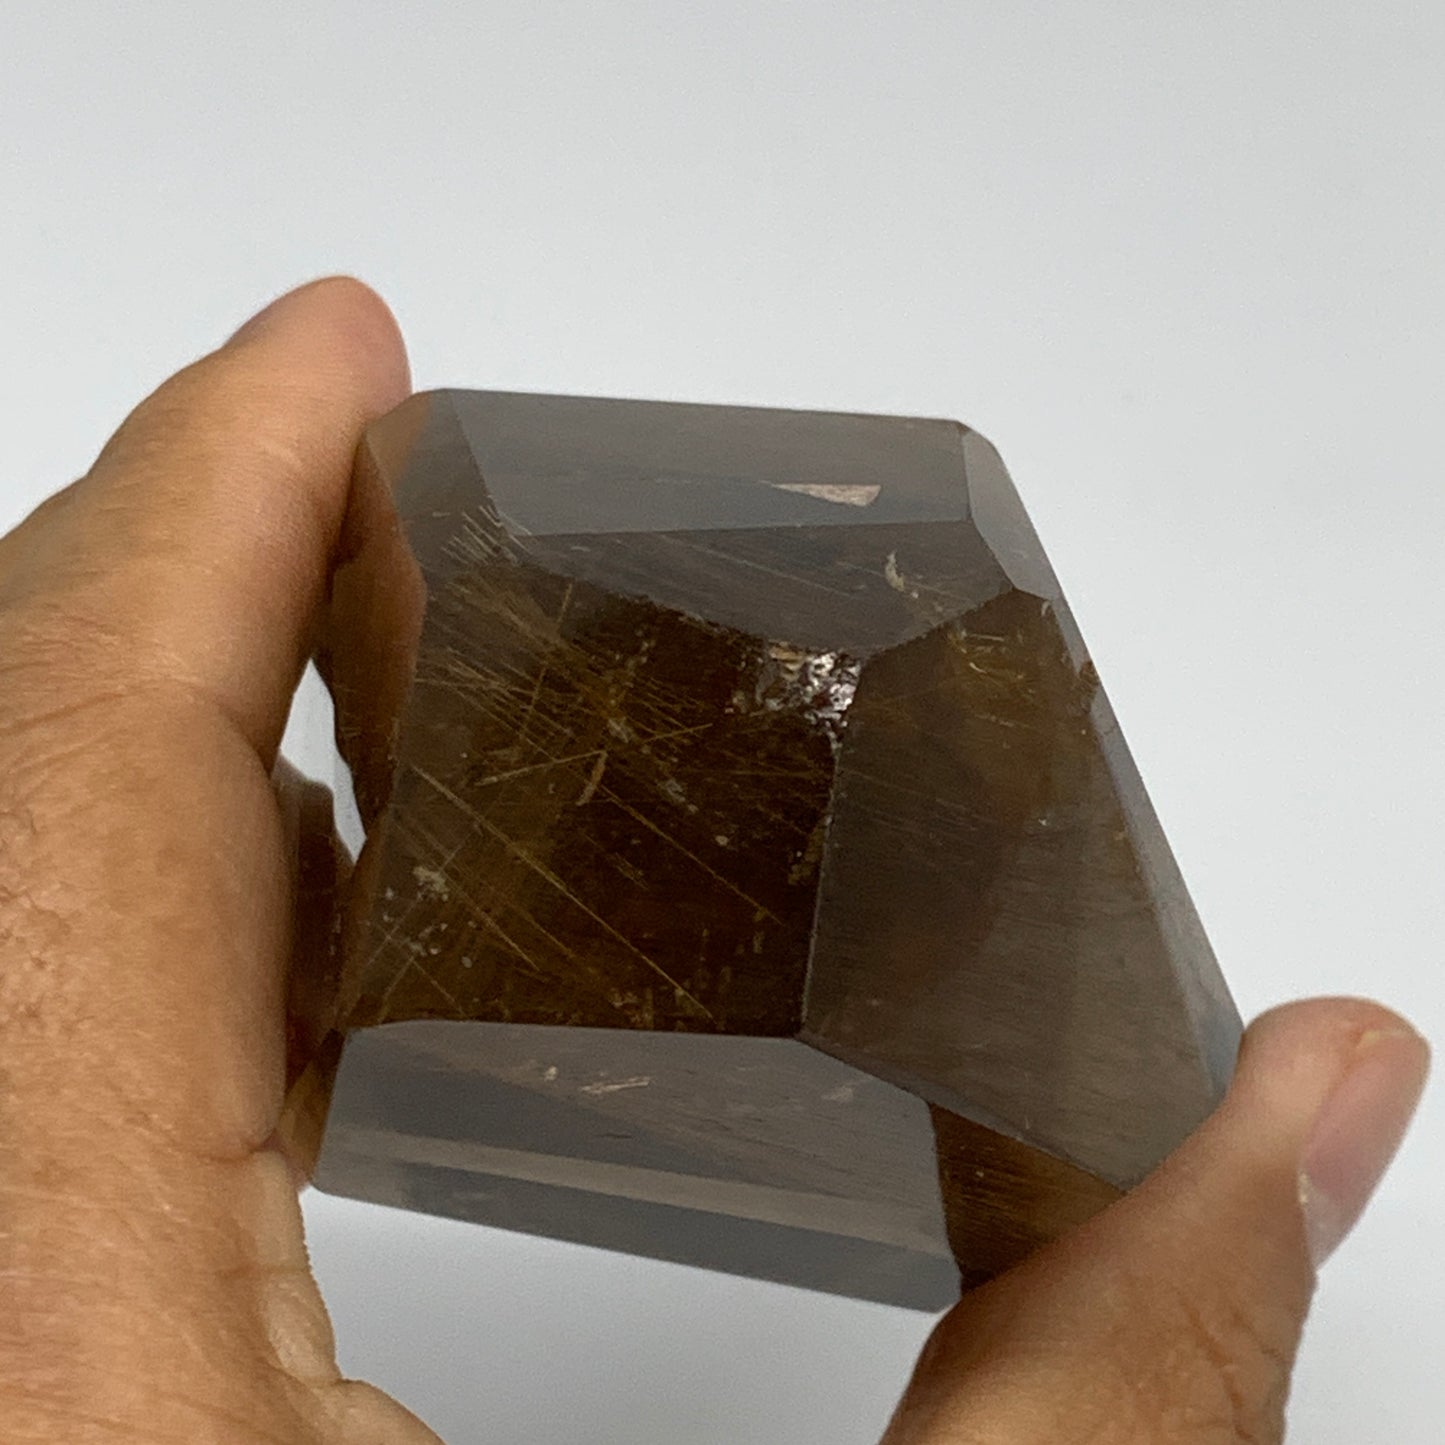 288.5g, 3"x2.3"x1.6", Natural Golden Rutile Quartz Crystal Chunk from Brazil,B27